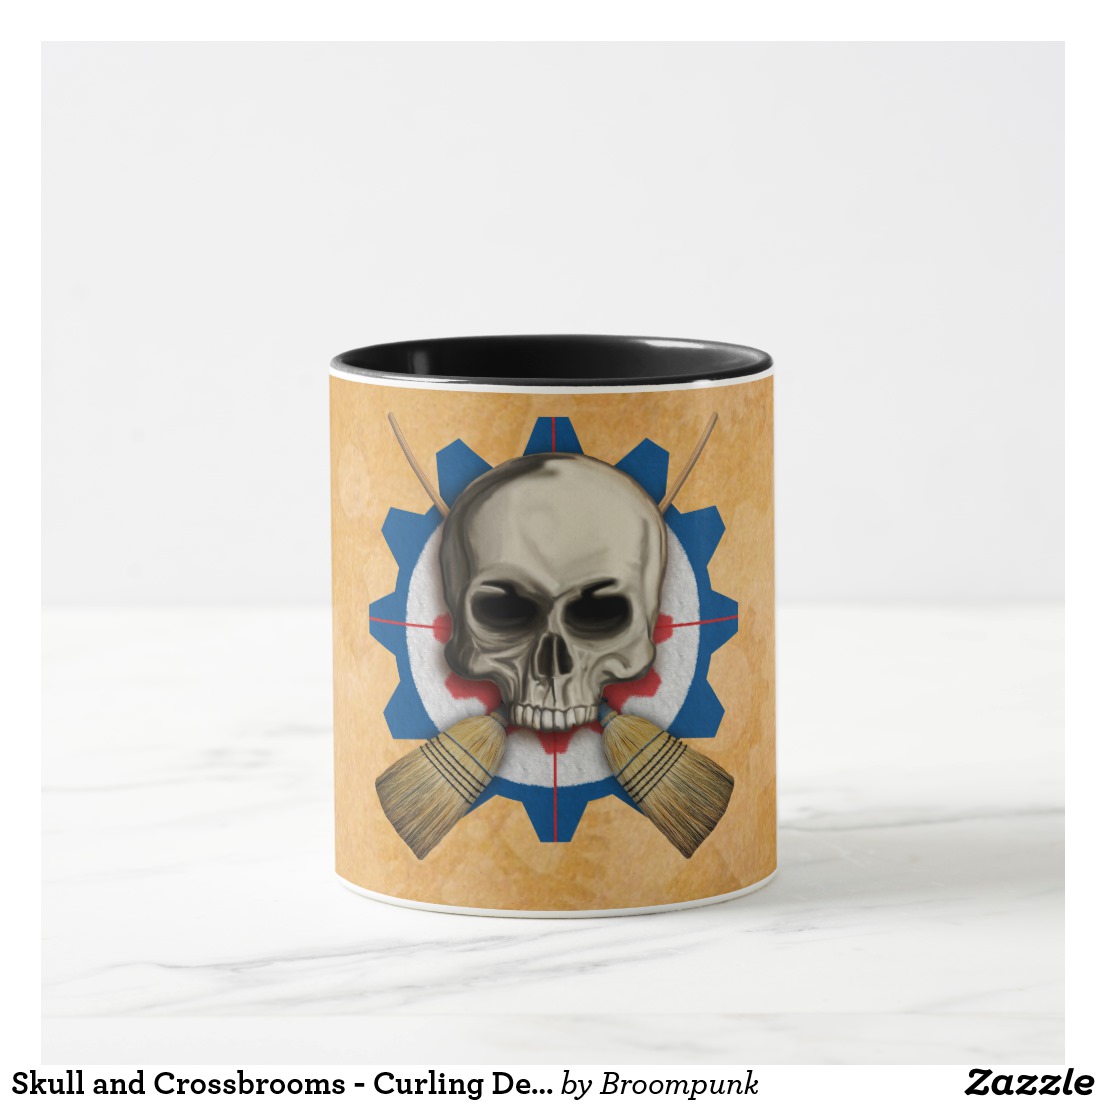 skull_and_crossbrooms_curling_design_mug-ref6c19fbaff4493facf30d6f9db1ee13_kfpv9_1024